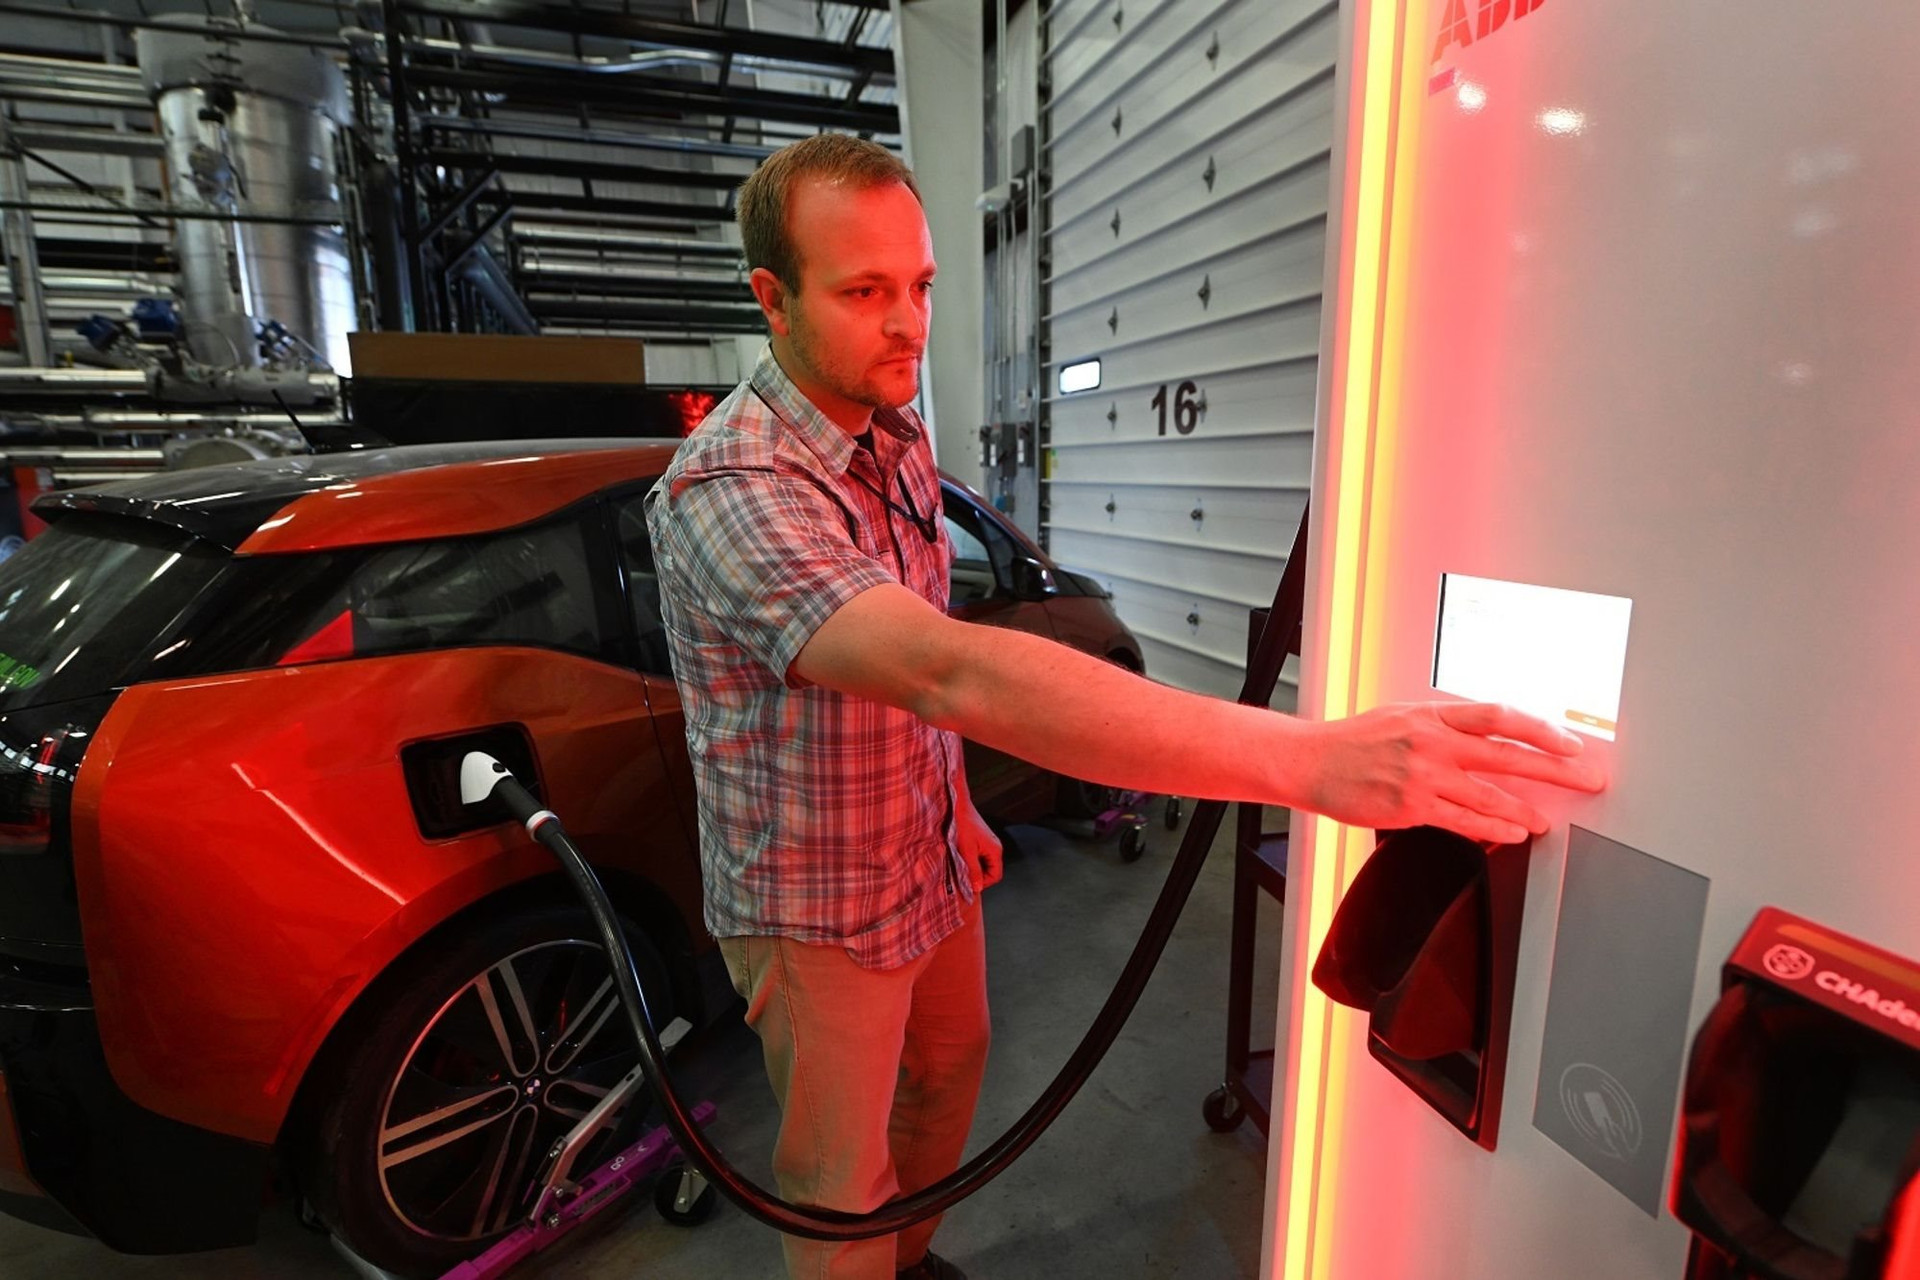 Xe điện pin nhỏ - Tương lai ngành công nghiệp EV: Sạc nhanh hơn, rẻ hơn cả xe xăng truyền thống - Ảnh 2.